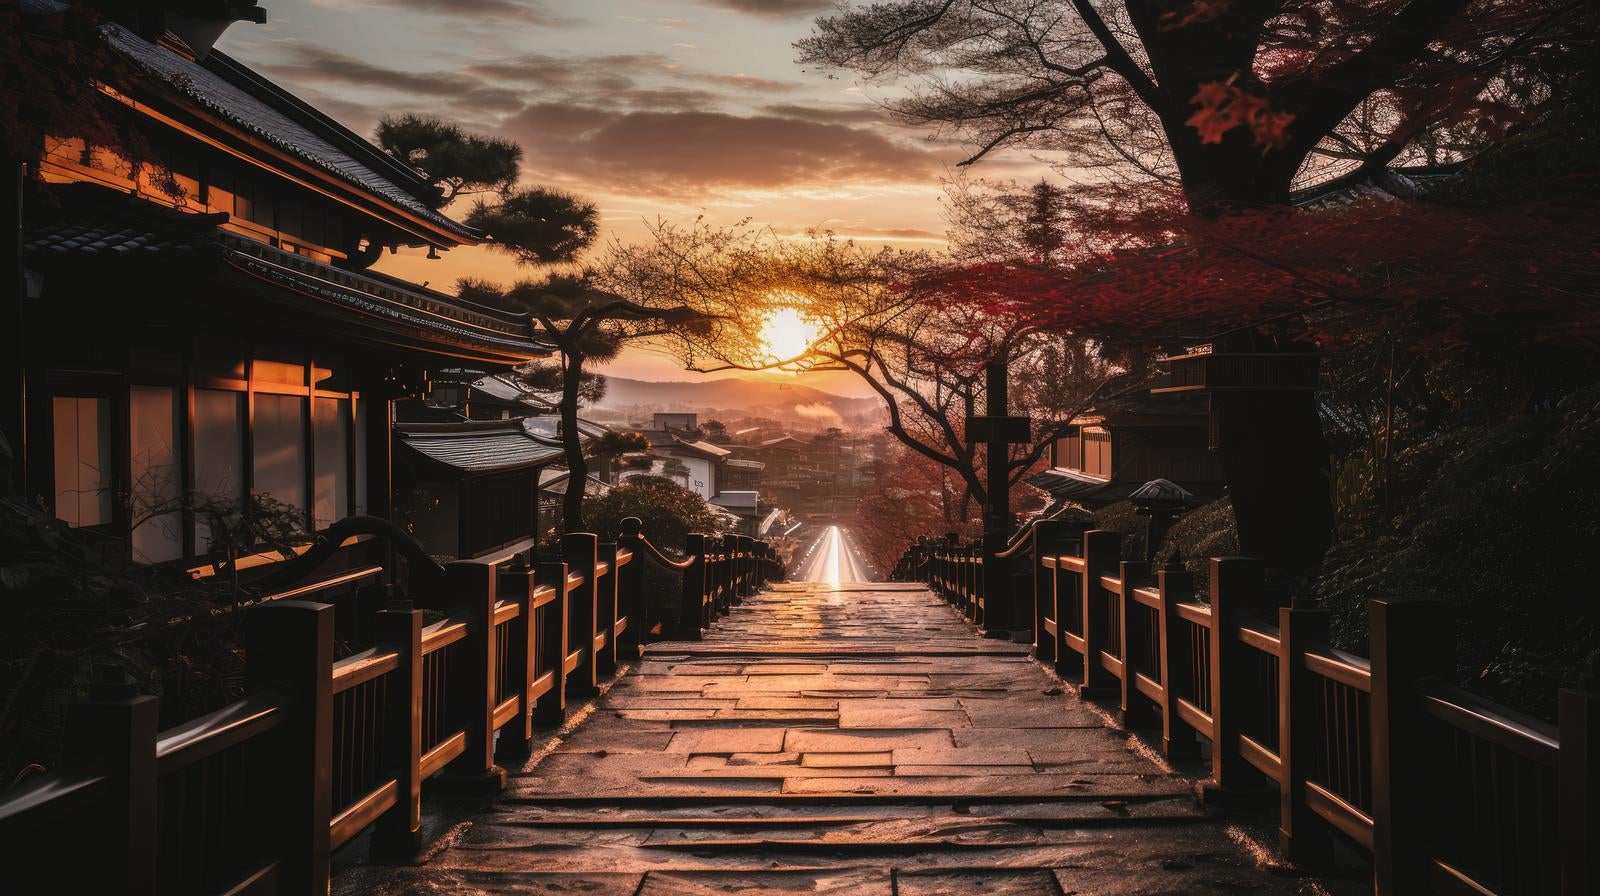 「日本家屋と日が暮れる様子」の写真